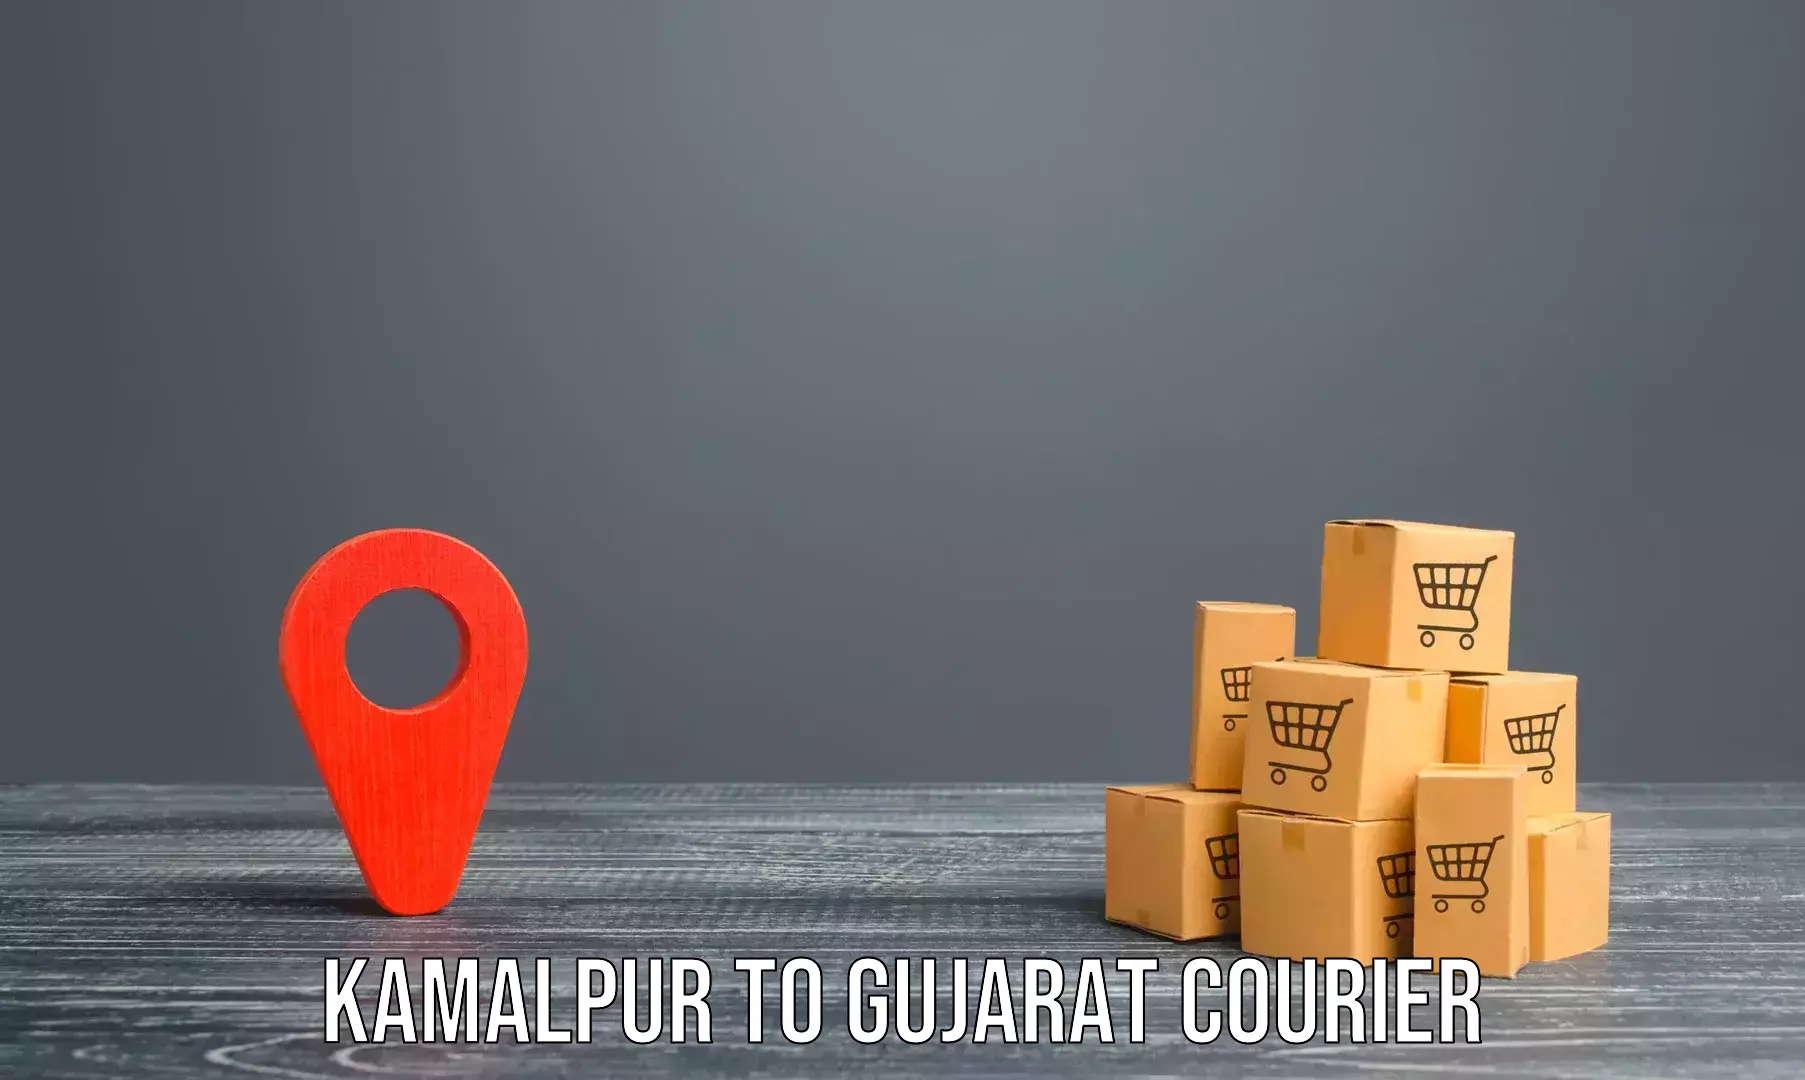 Furniture moving and handling Kamalpur to Gujarat